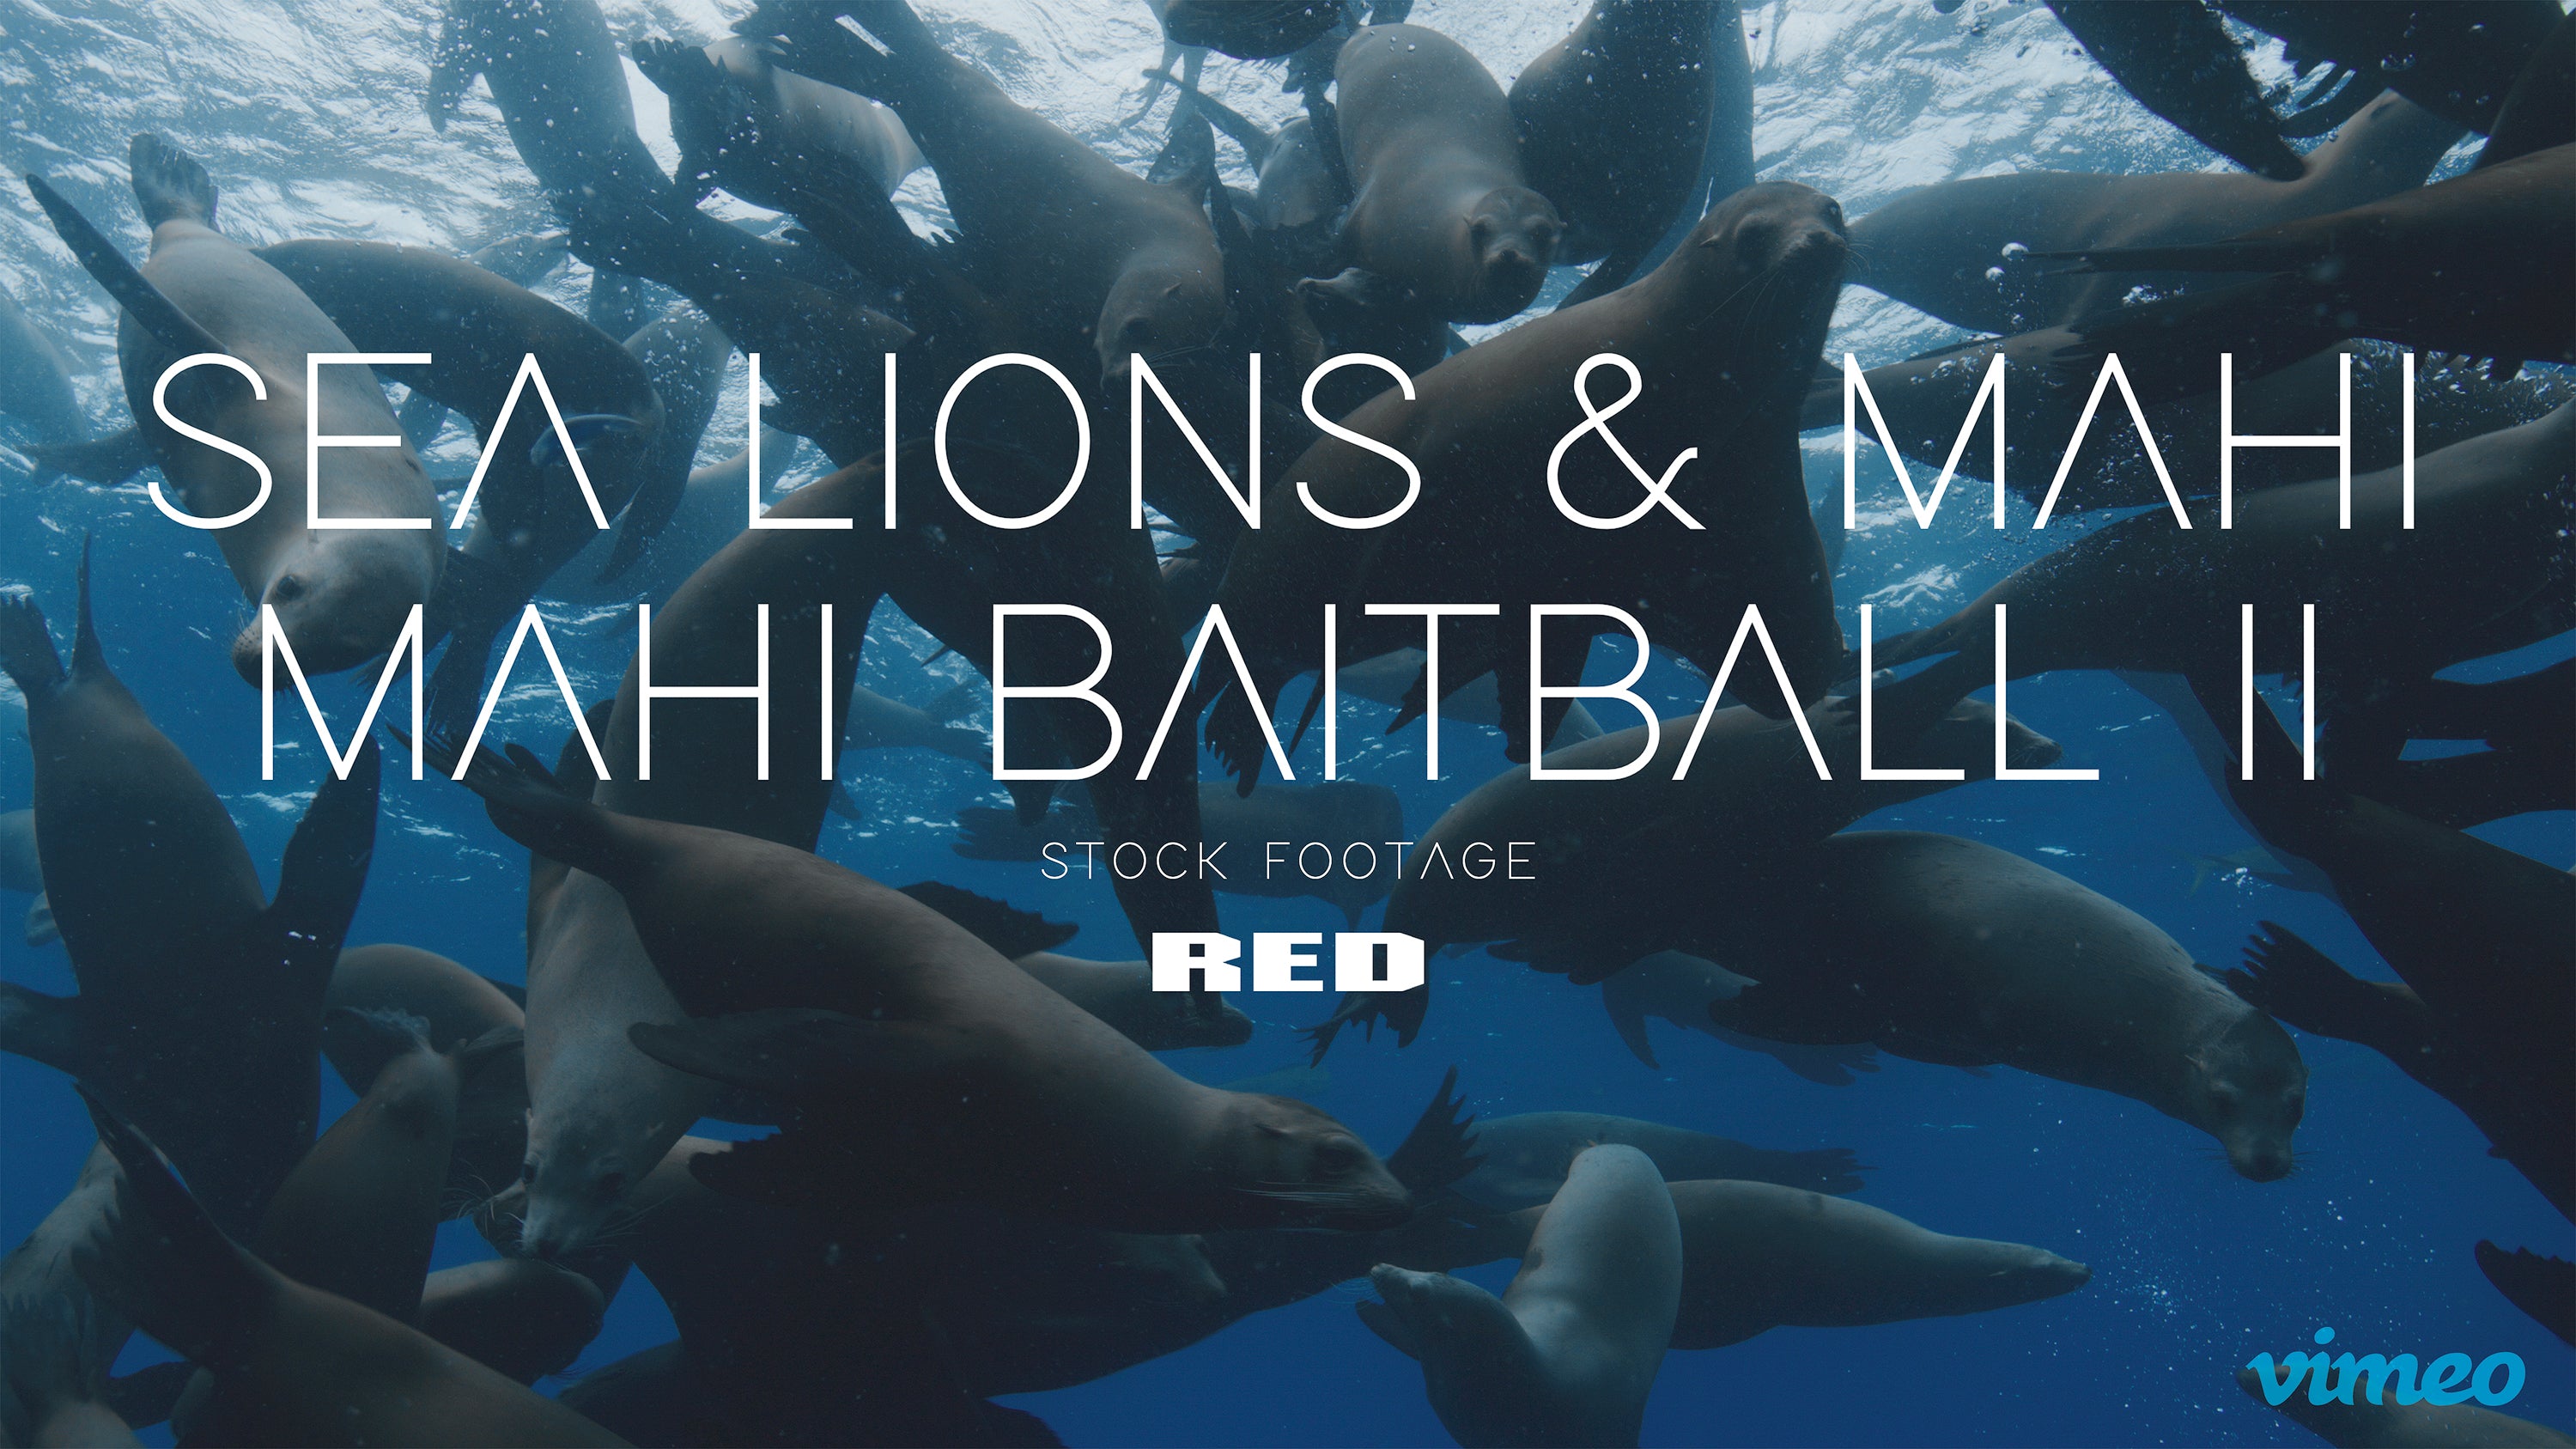 Sea lions & Mahi mahi baitball II